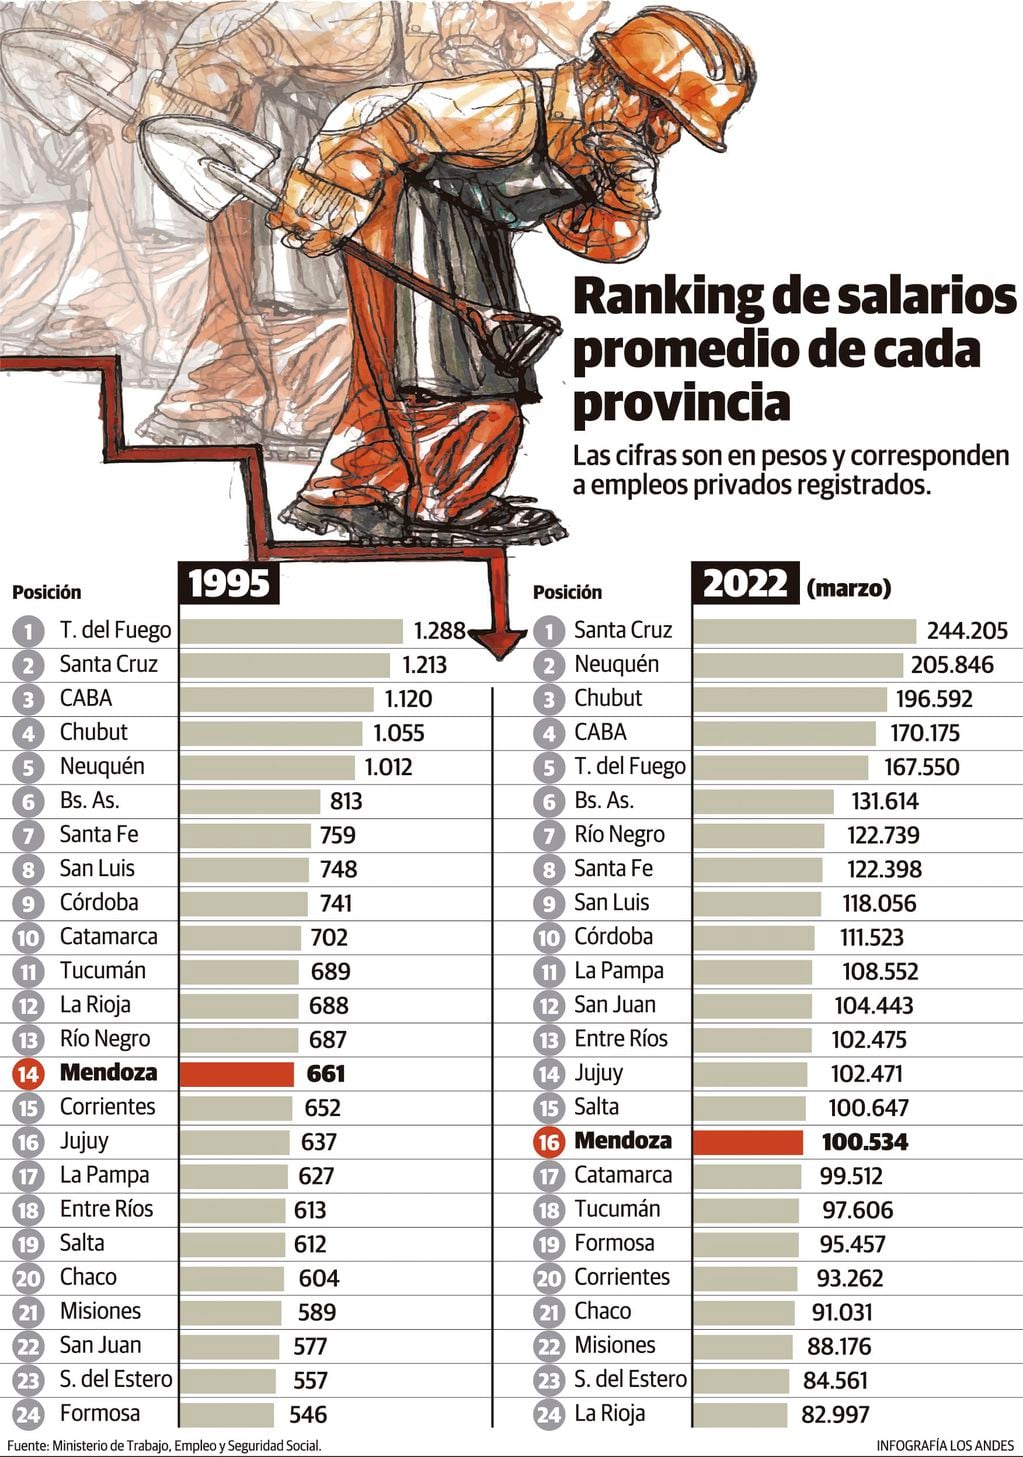 Salarios privados 1995 vs 2022 por provincia